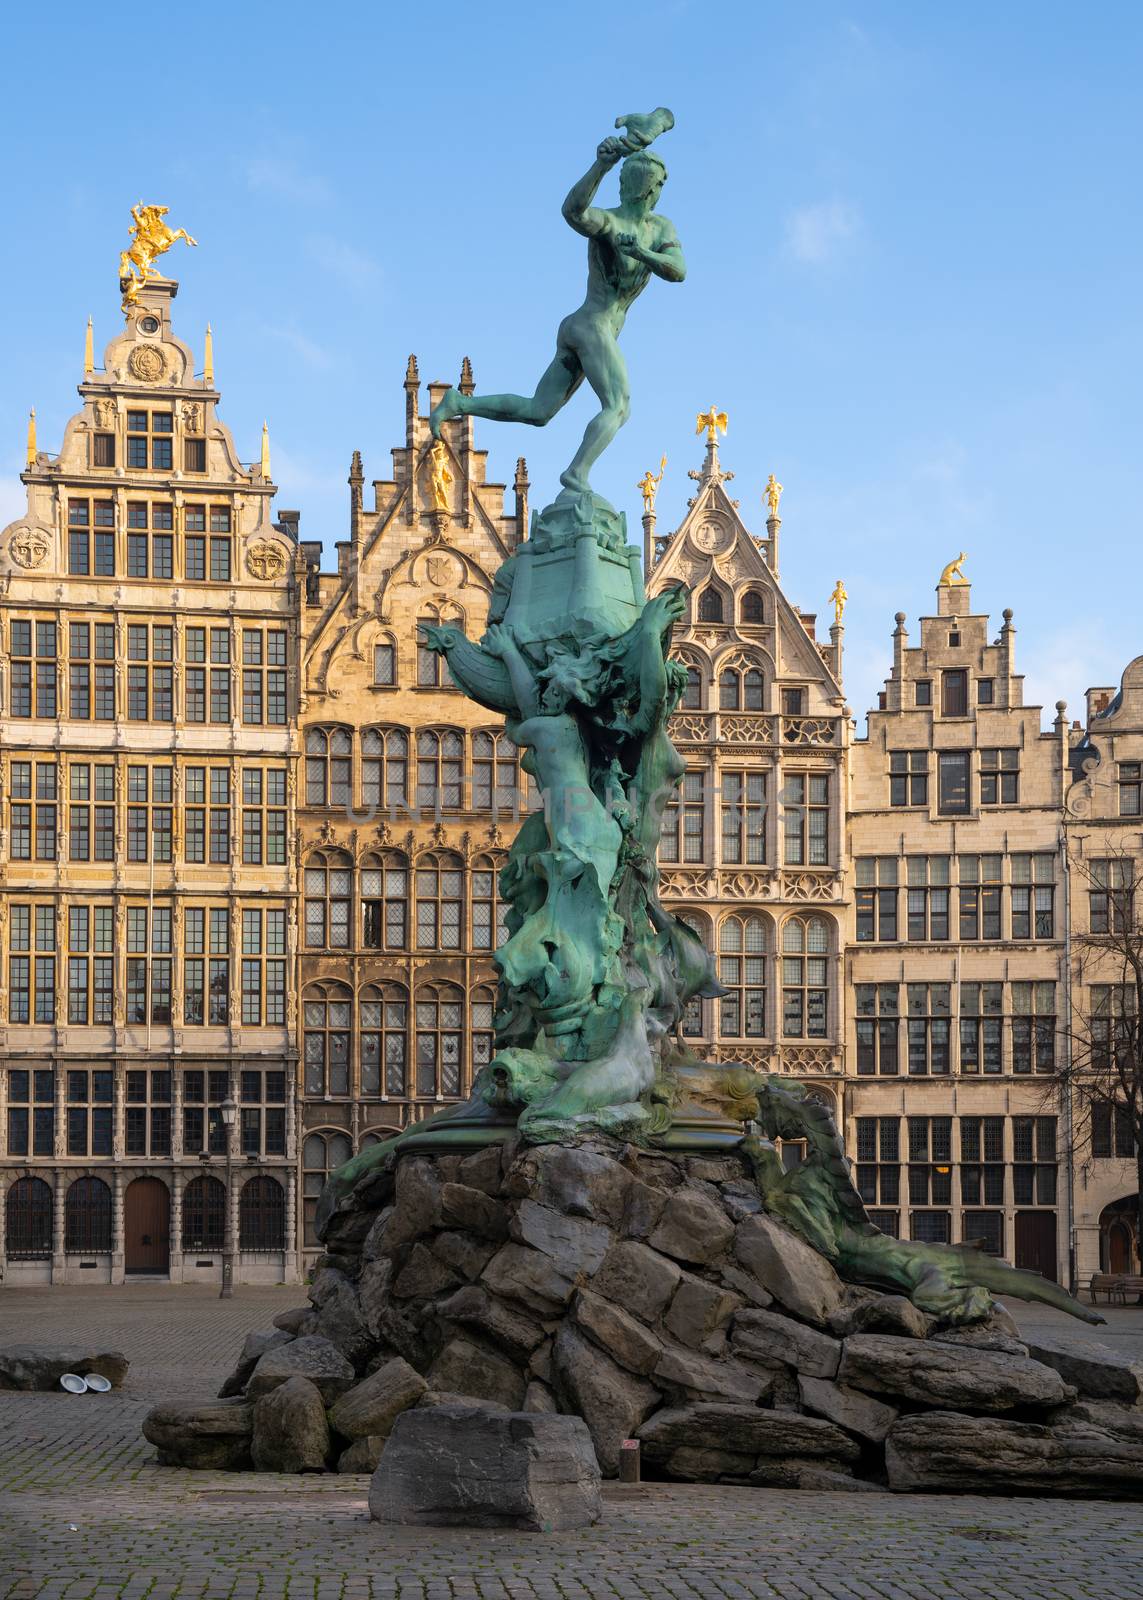 Grote Market, Antwerp, Belgium by alfotokunst